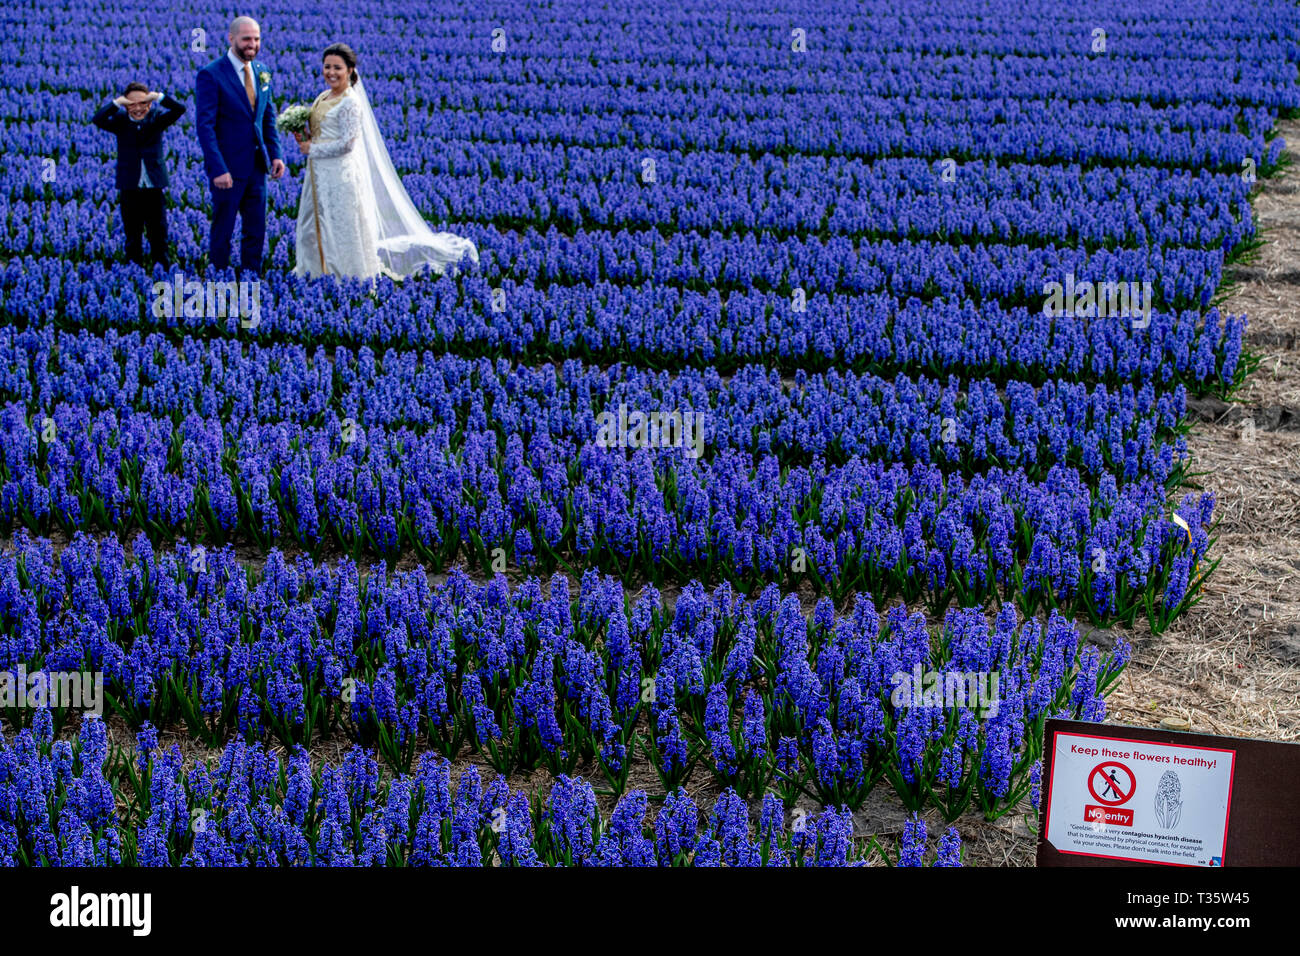 LISSE - een bruidspaar trouwen tulpenvelden staan in de bloei tulp tulpen , roos , rozen , bollenvelden staan in de bloei tijdens de lente bloembollen Stock Photo